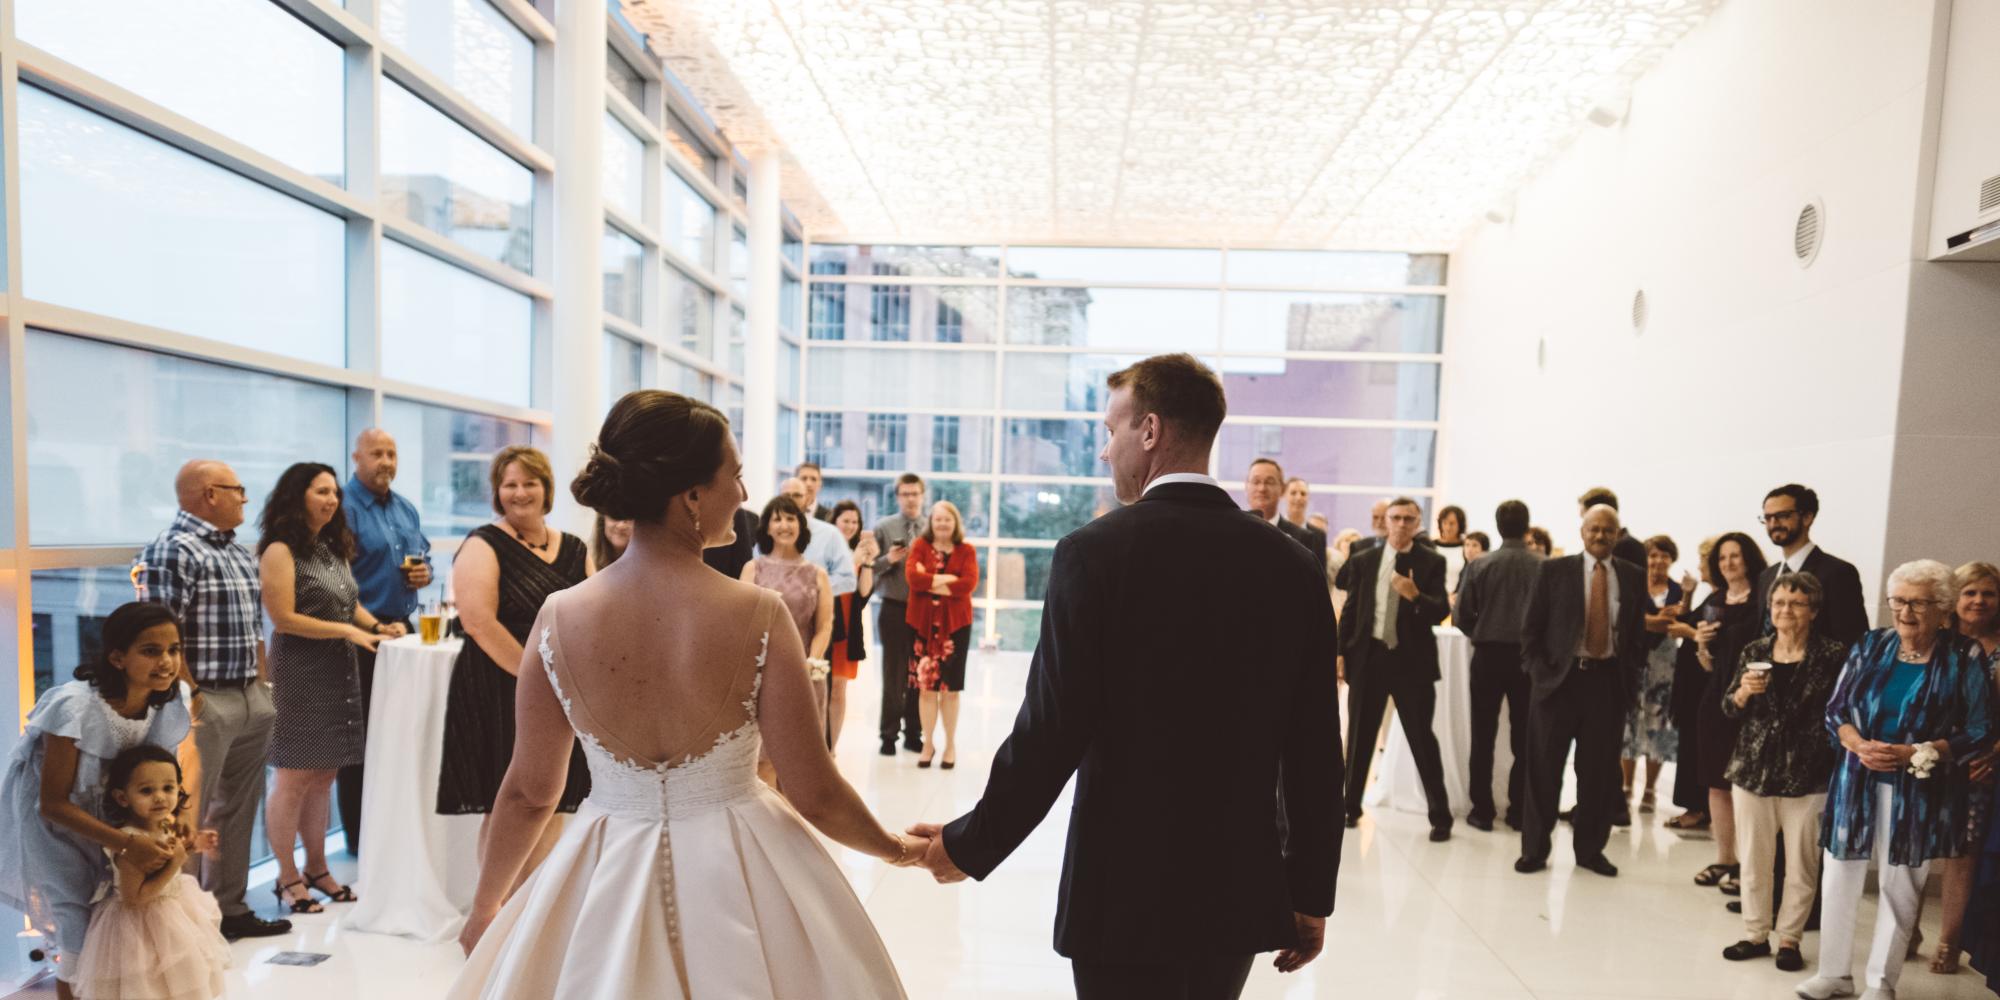 bride and groom entering dance floor in front of wedding guests